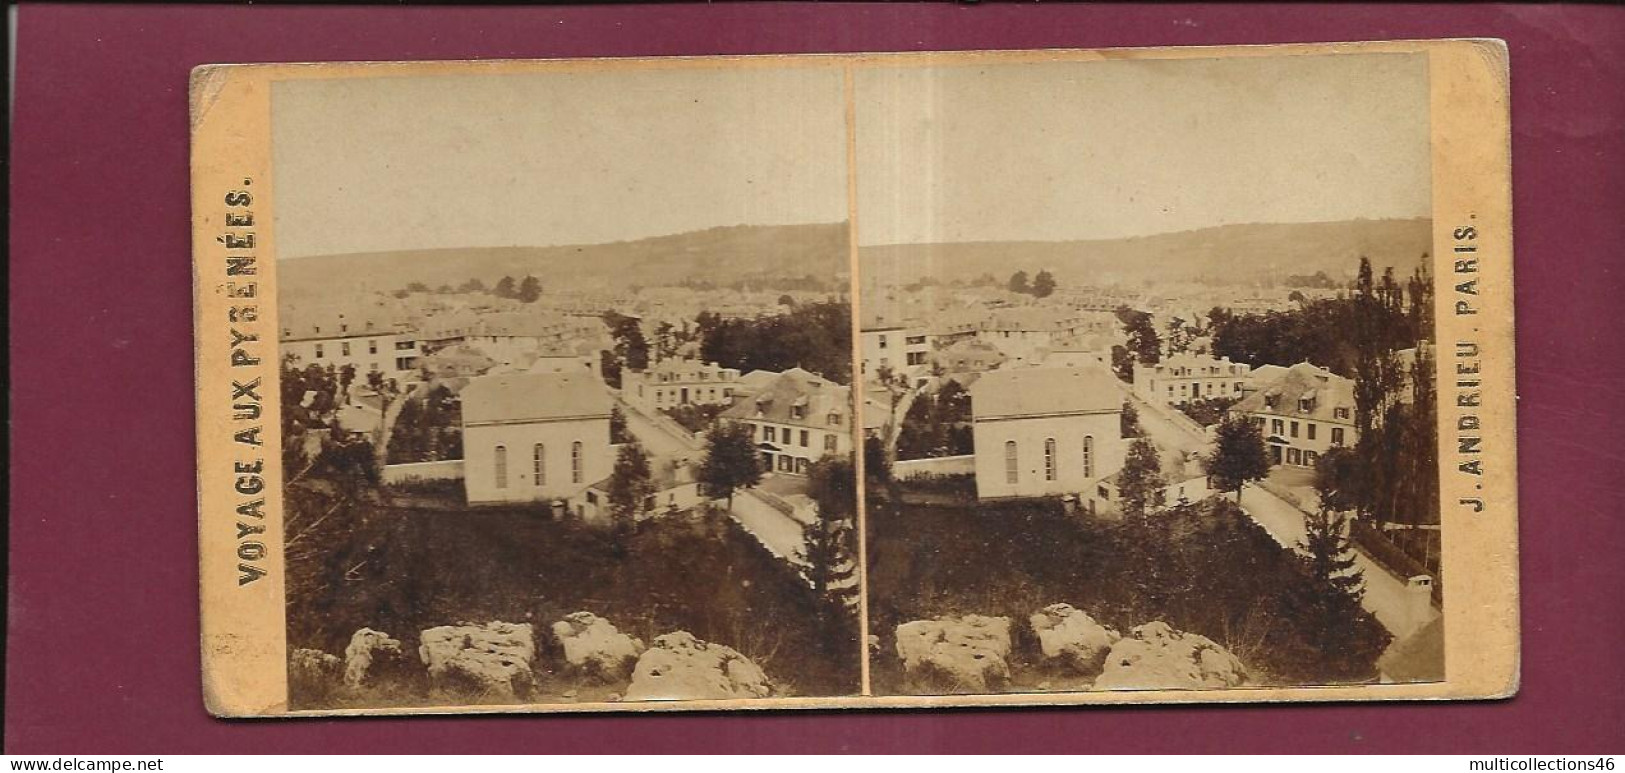 190424 - PHOTO STEREO PAPIER - VOYAGE AUX PYRENEES J ANDRIEU PARIS - BAGNERES DE BIGORRE Vue Prise De Lapeyrère - Stereo-Photographie